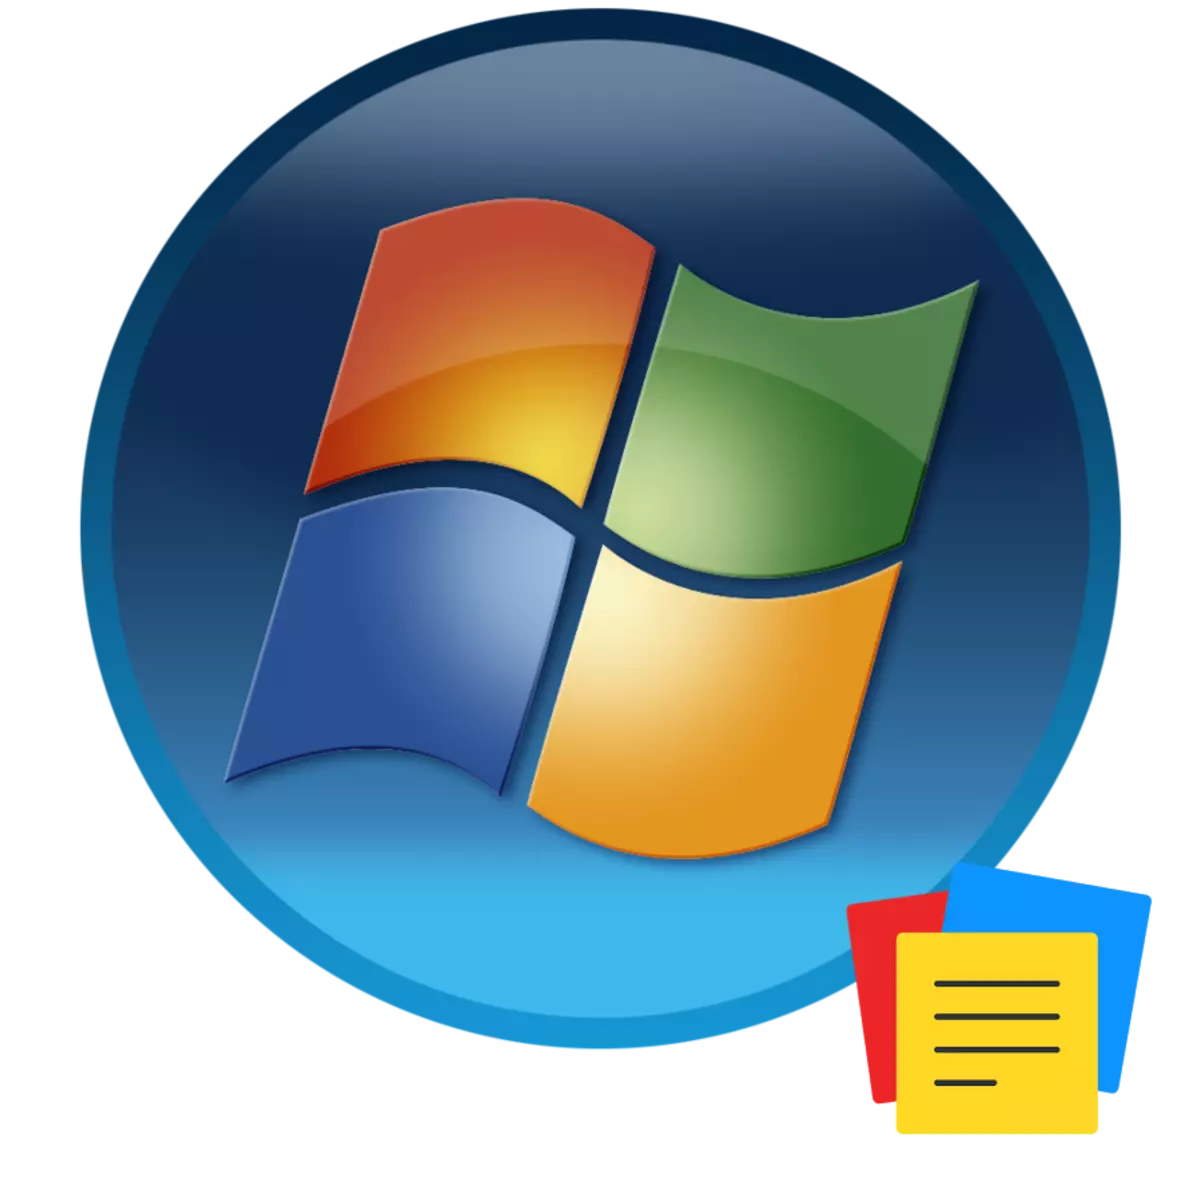 Gadgets在Windows 7中的註釋